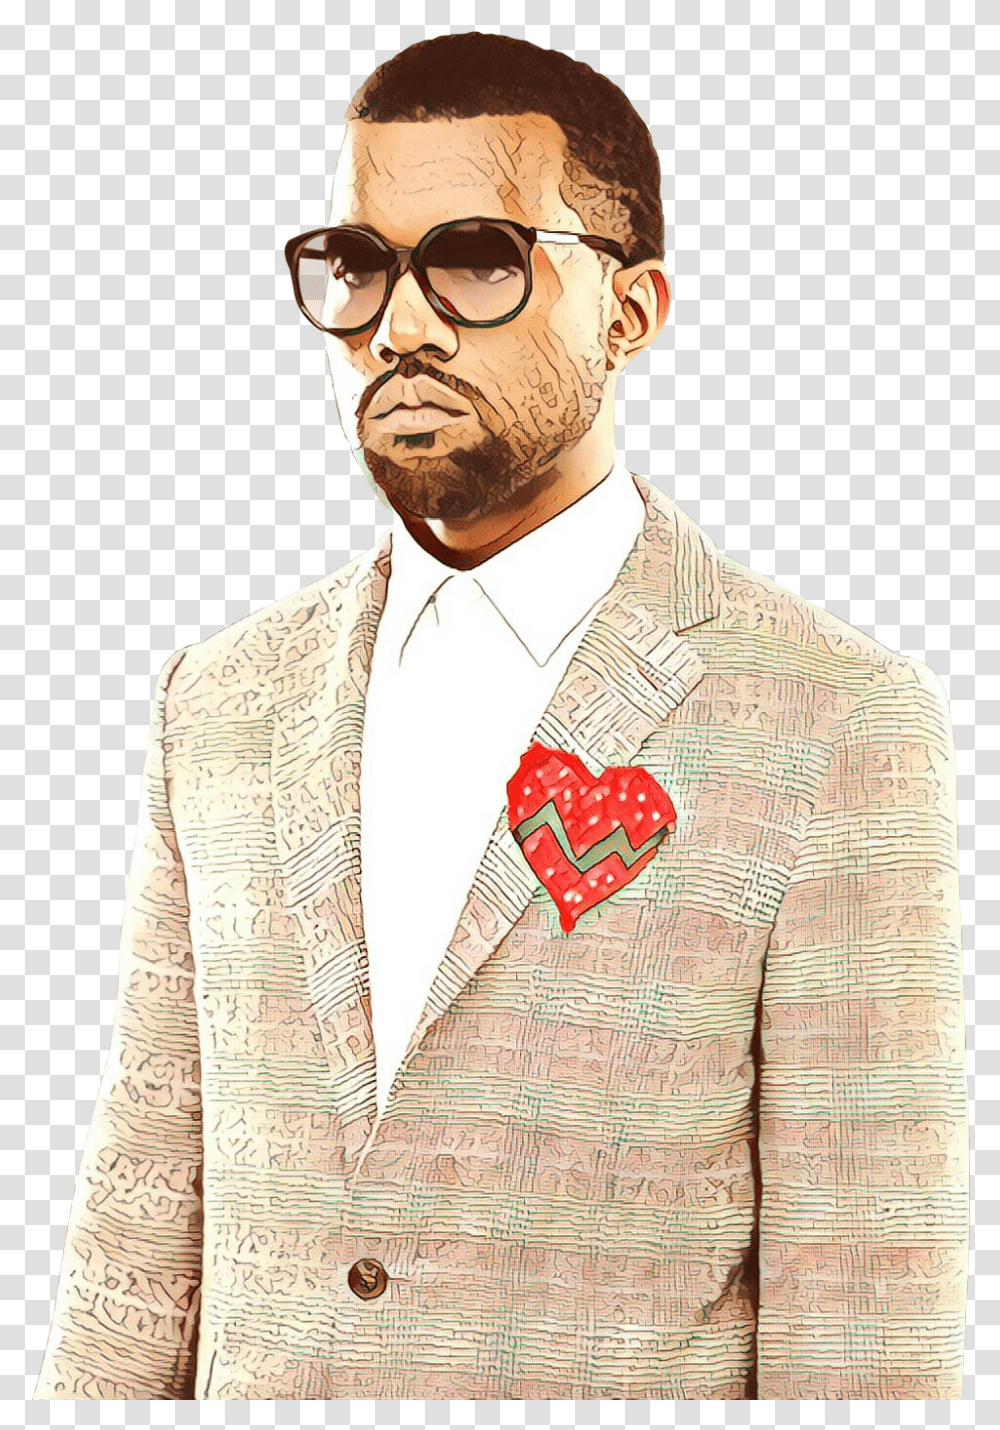 Kanye West 808s & Heartbreak Hip Hop Music Moustache Singer Kanye West 808s Heartbreak, Clothing, Person, Blazer, Jacket Transparent Png